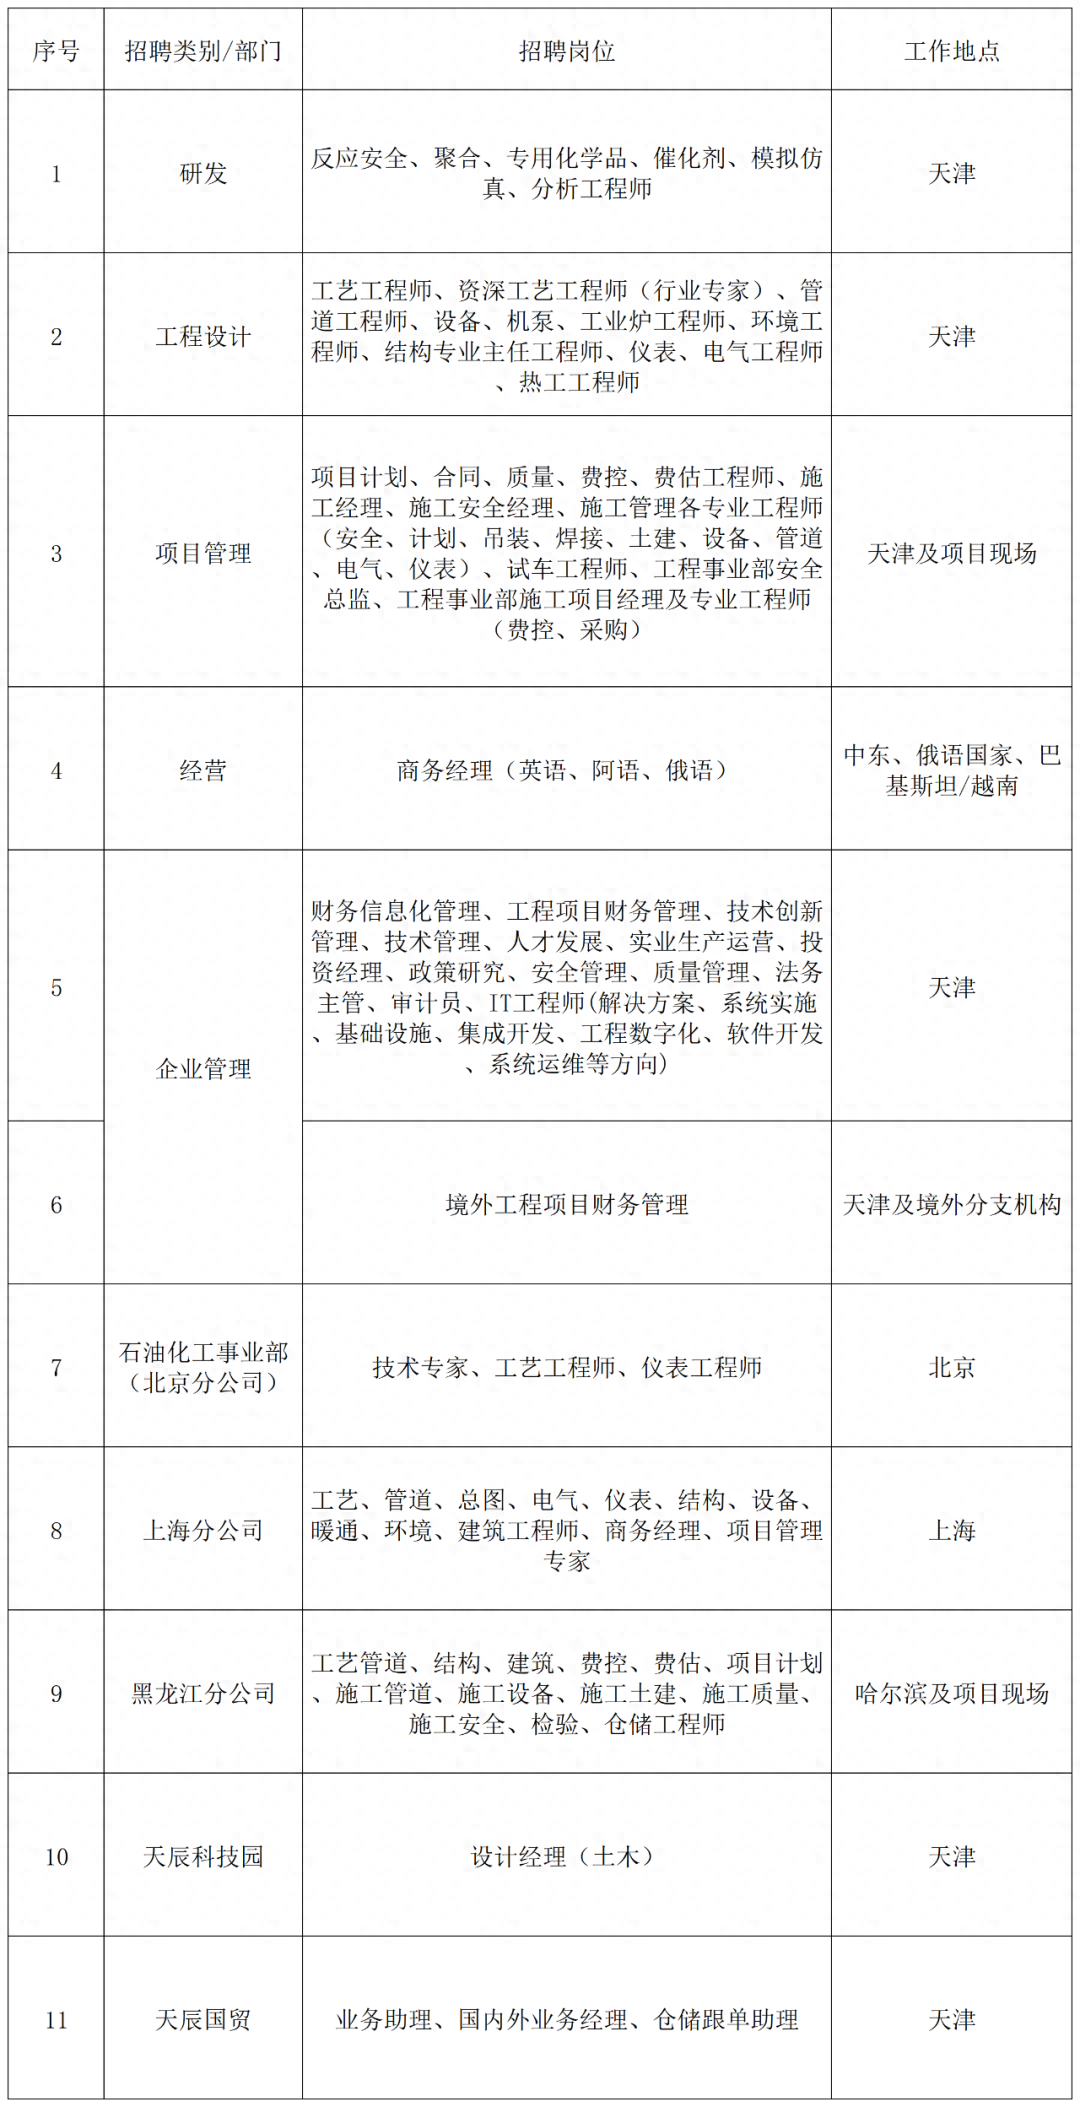 【社招】中国化学工程集团有限公司所属企业招聘公告